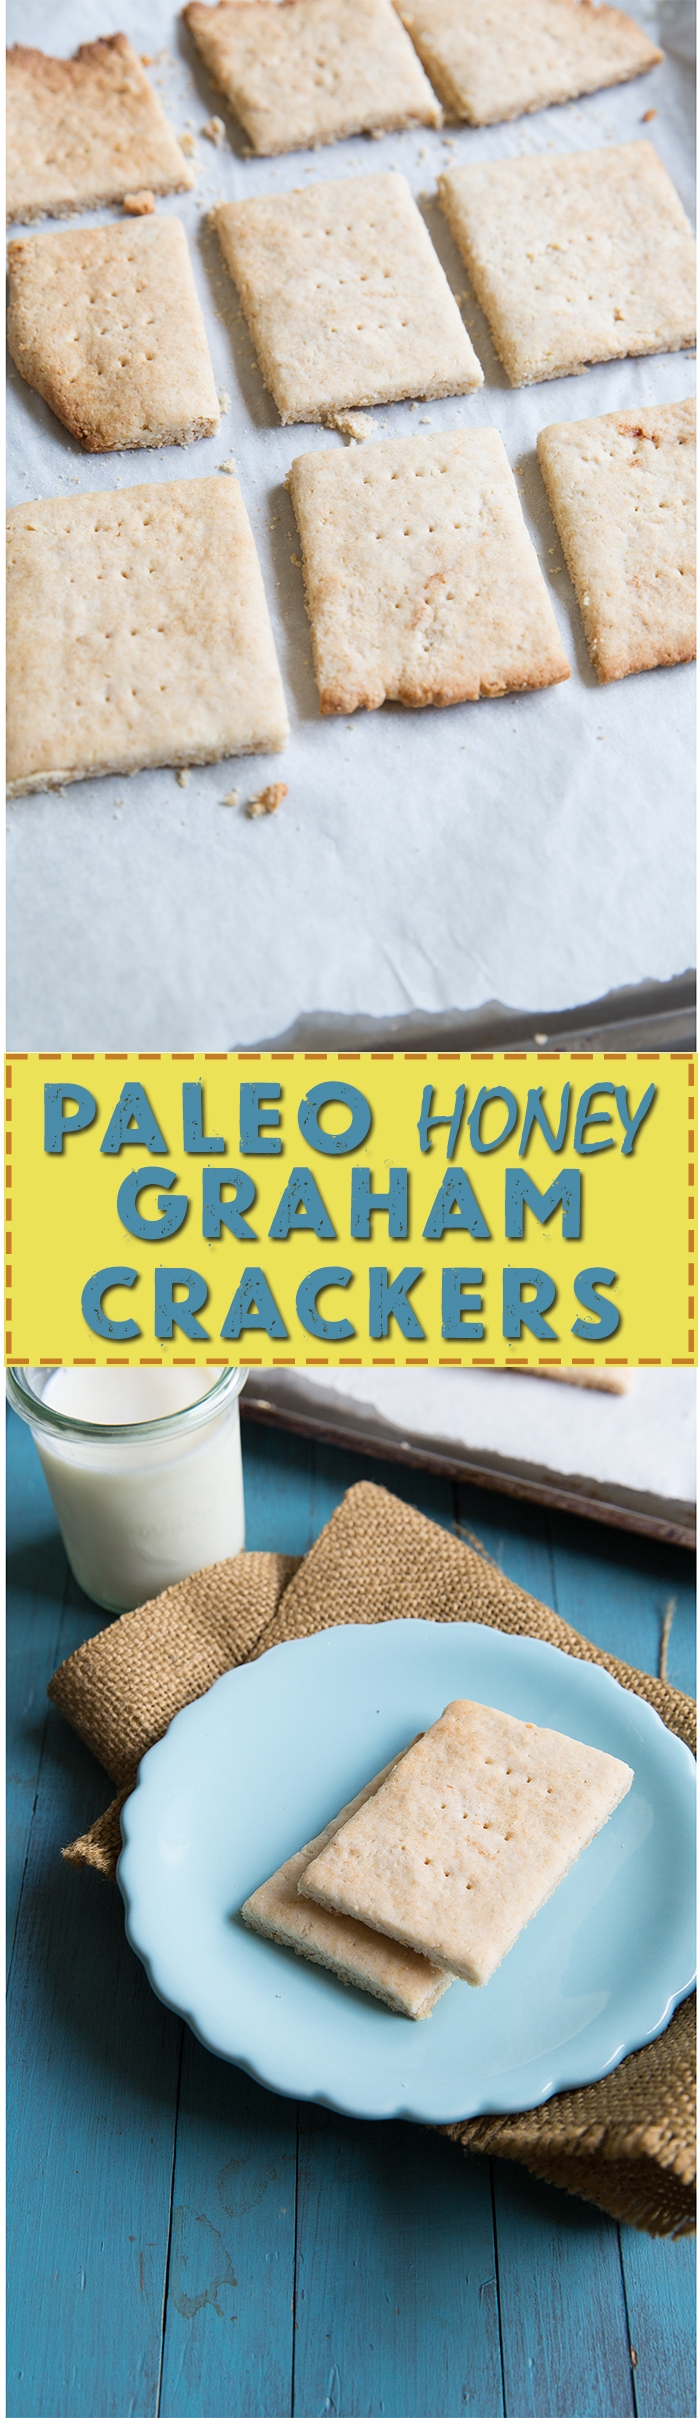 paleo honey graham crackers